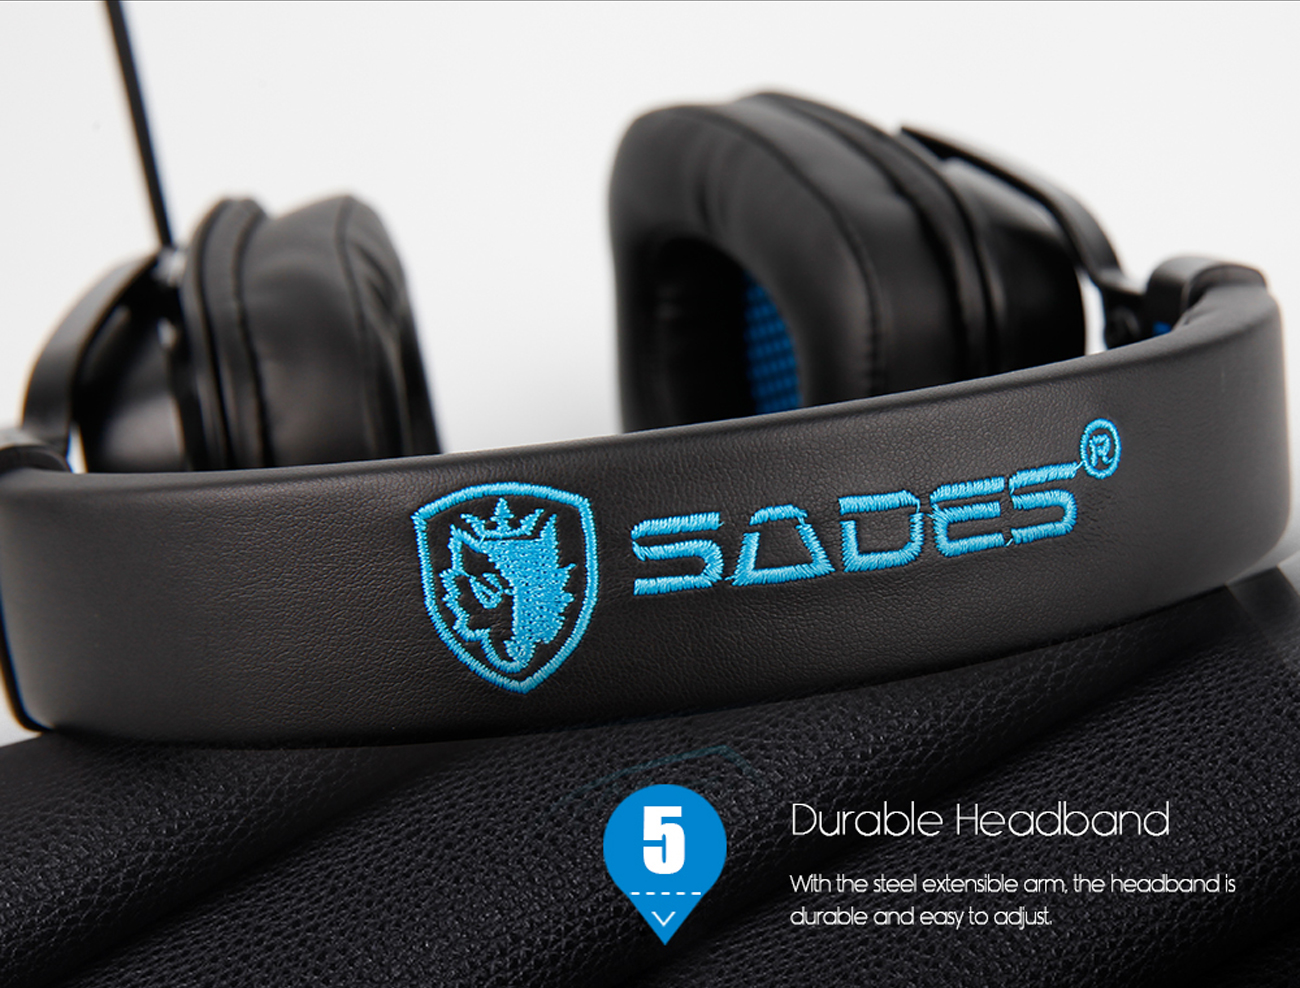 SADES Dpower 3.5mm Gaming Headset